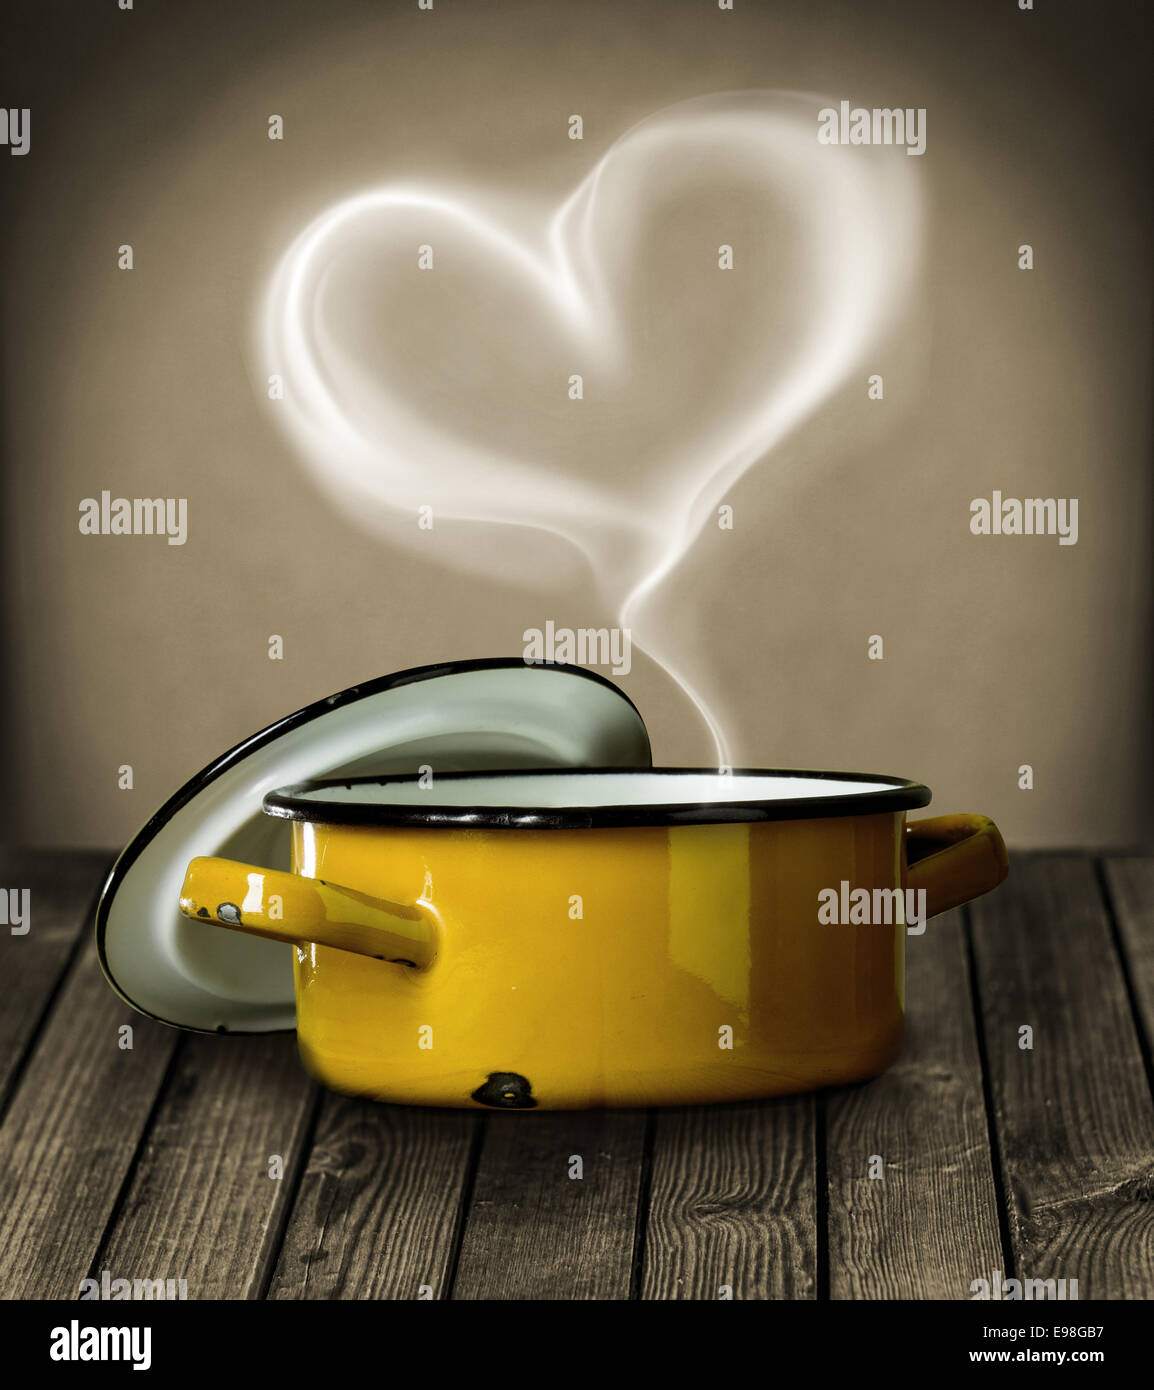 La vapeur en forme de coeur planant dans l'air au-dessus d'une marmite en métal émaillé jaune symbolique de l'amour sur un comptoir de cuisine en bois rustique Banque D'Images